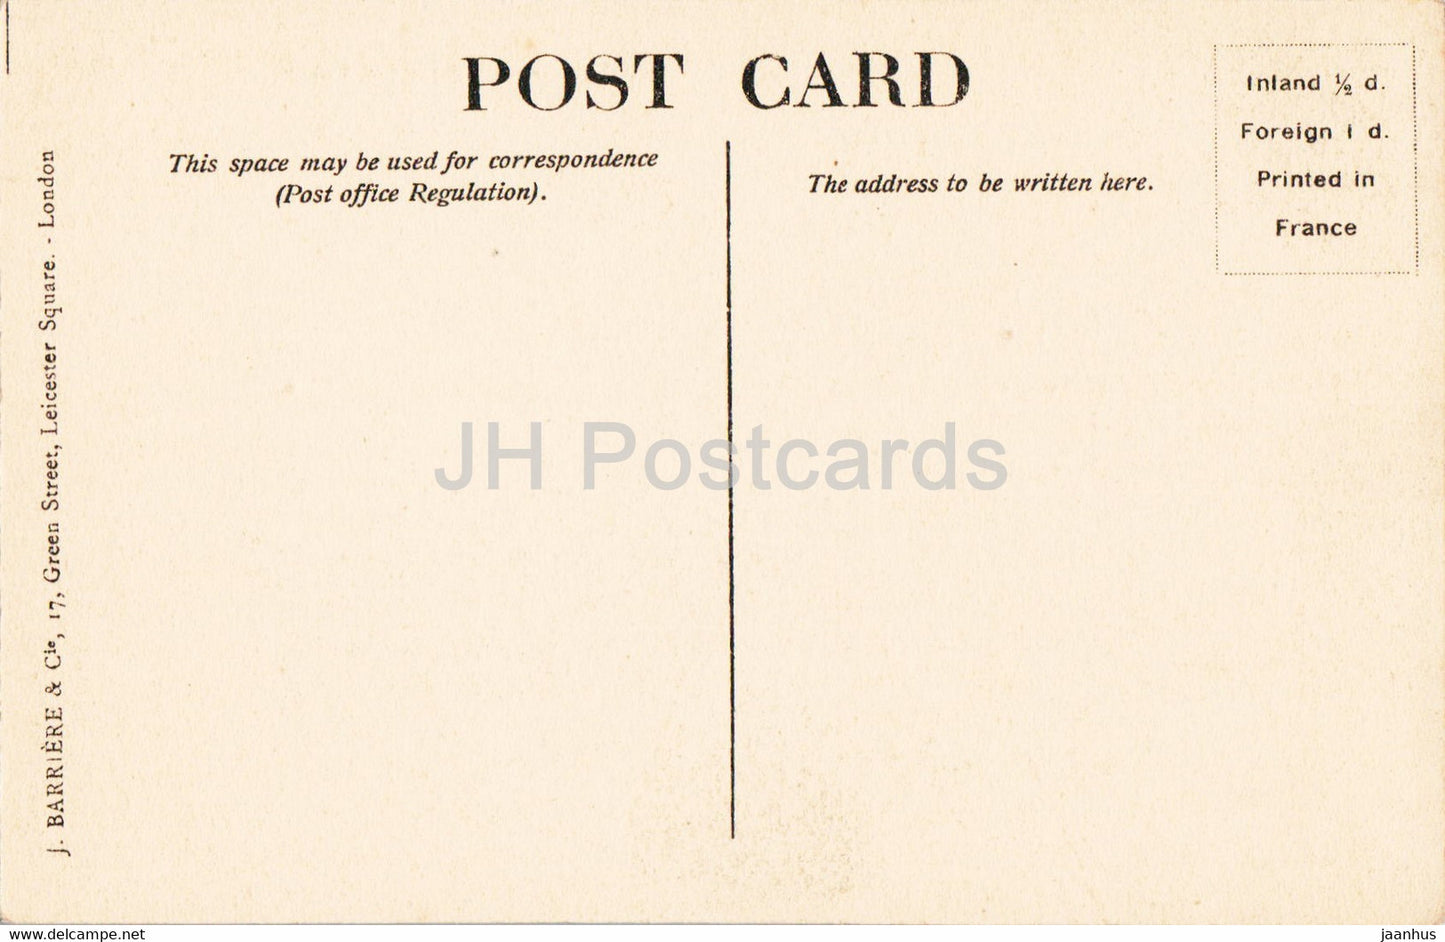 Londres - Les Chambres du Parlement - bateau - carte postale ancienne - Angleterre - Royaume-Uni - inutilisé